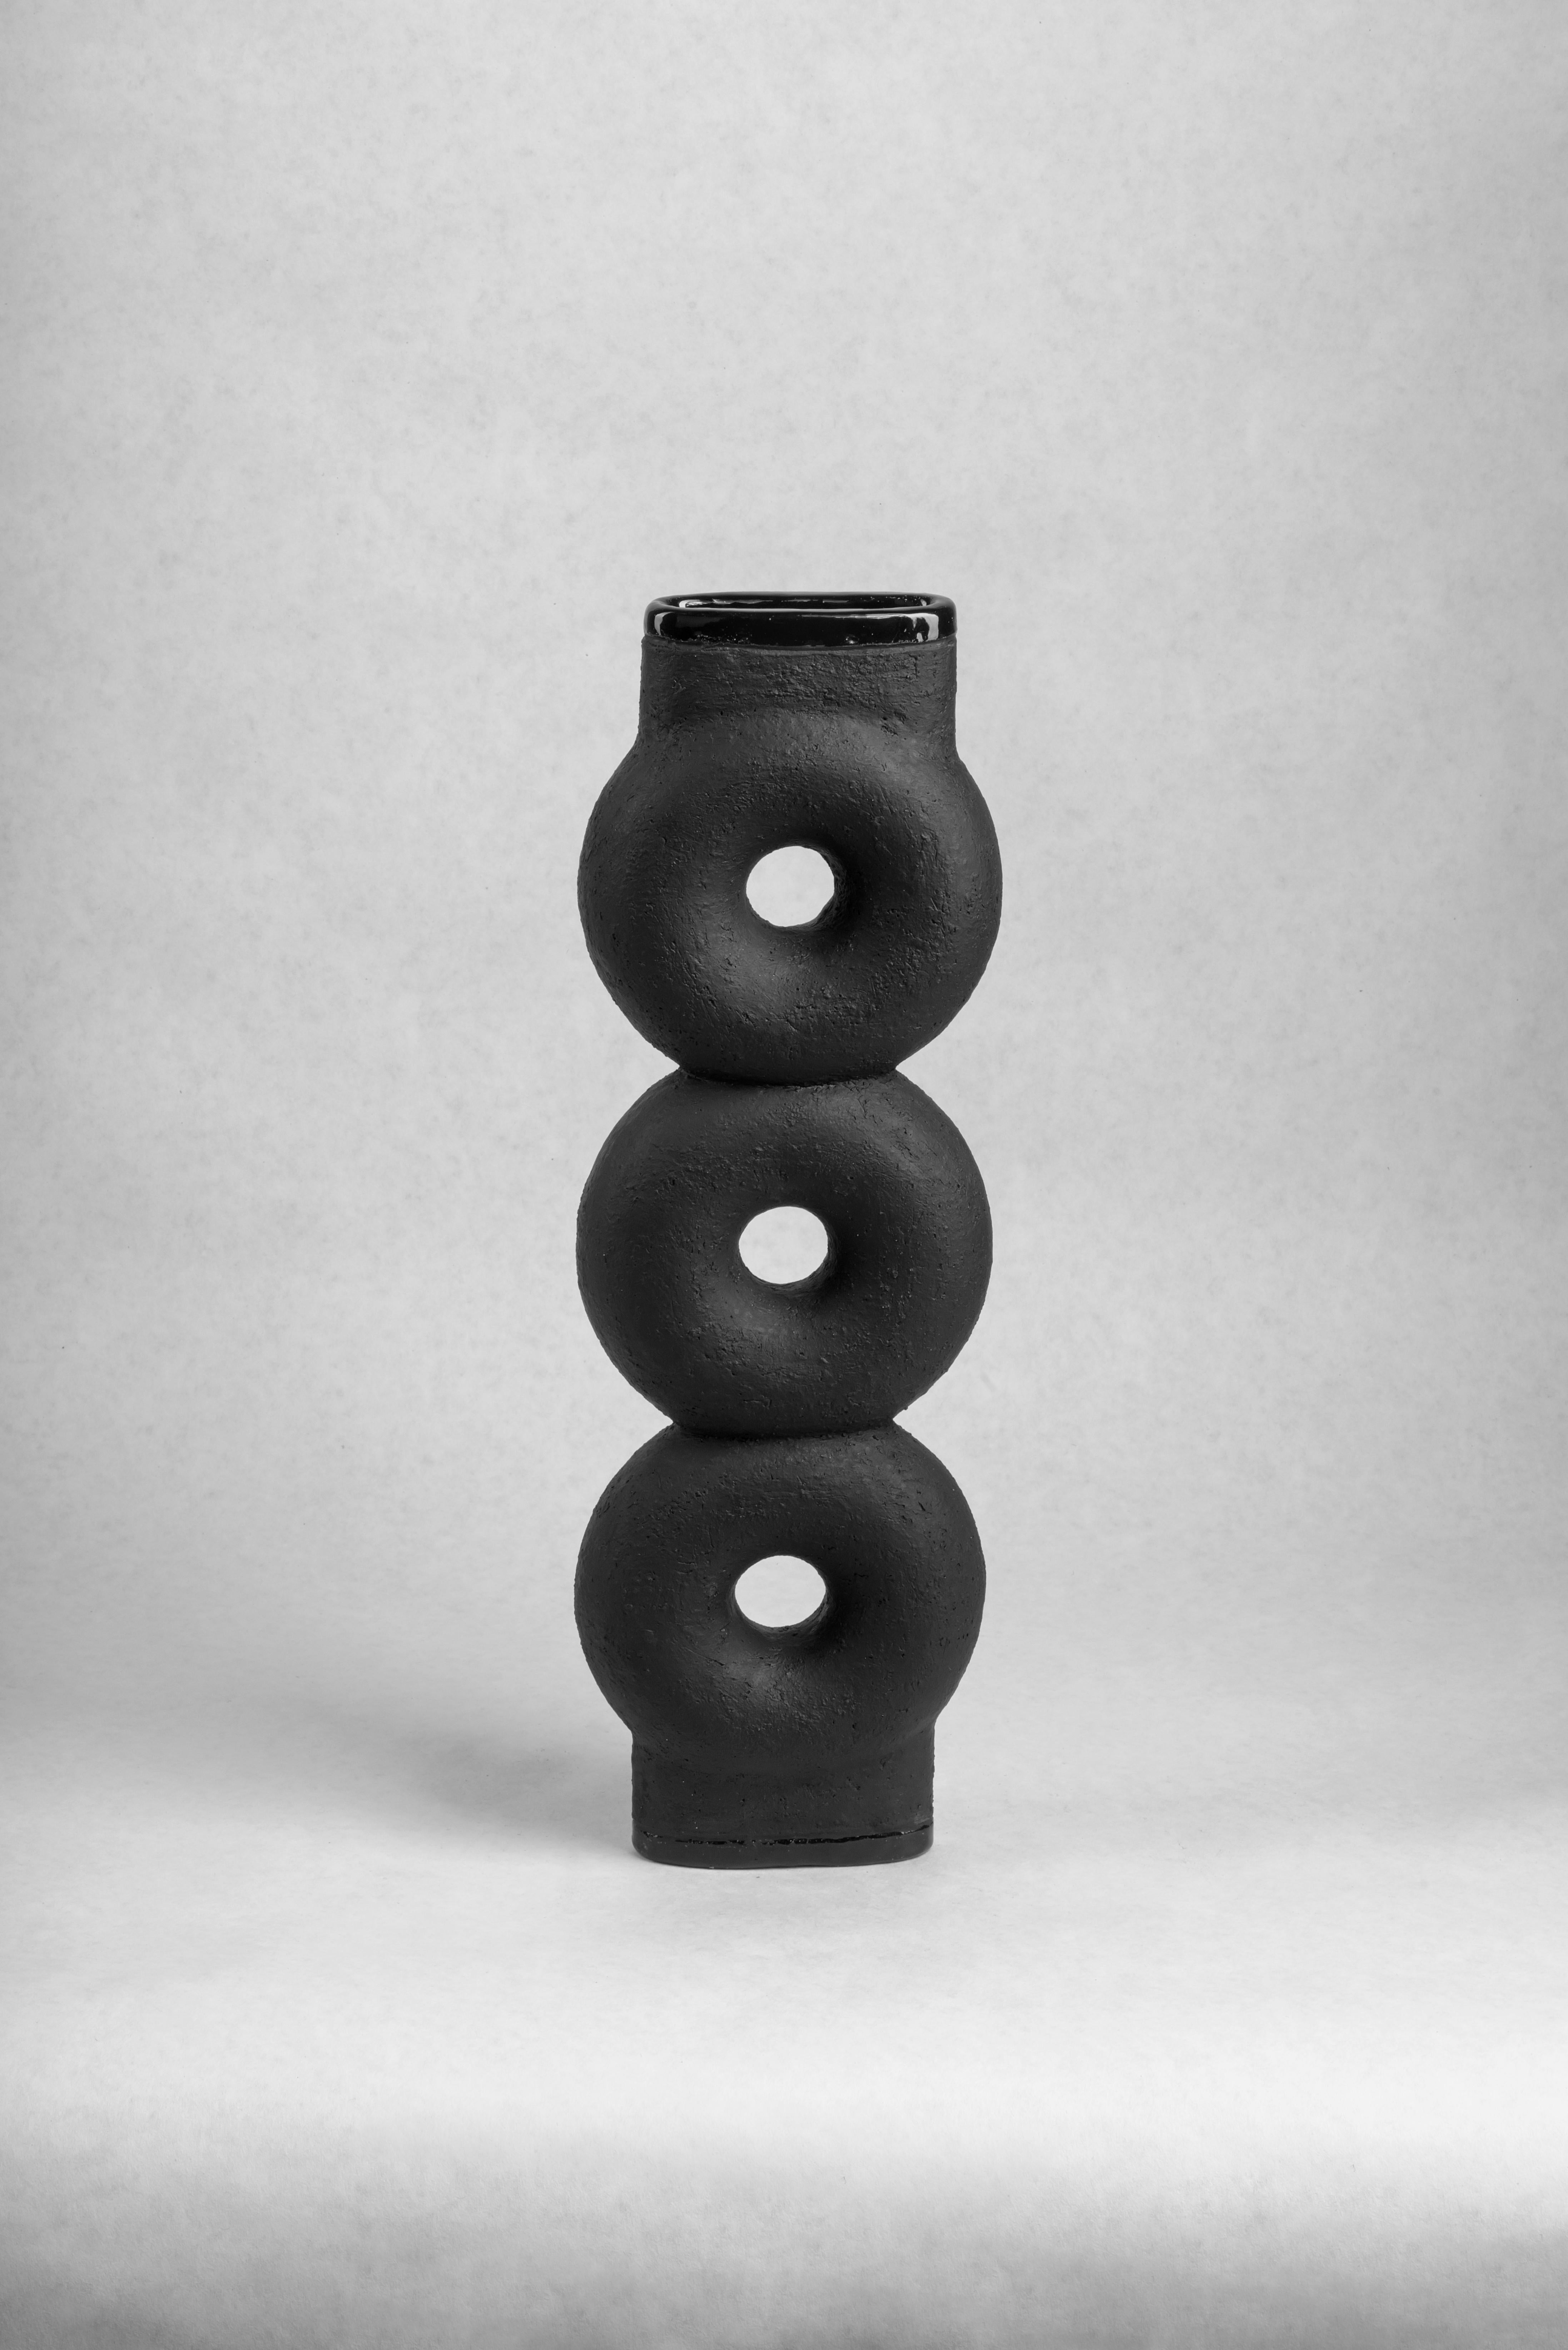 Paire de vases en céramique sculptée FAINA
Design : Victoriya Yakusha
MATERIAL : argile / céramique
Dimensions : 14 x 5 x H 43,5 cm : 14 x 5 x H 43,5 cm


Le vase fait partie d'une série de 5 vases, l'ensemble des vases se compose de :

1.